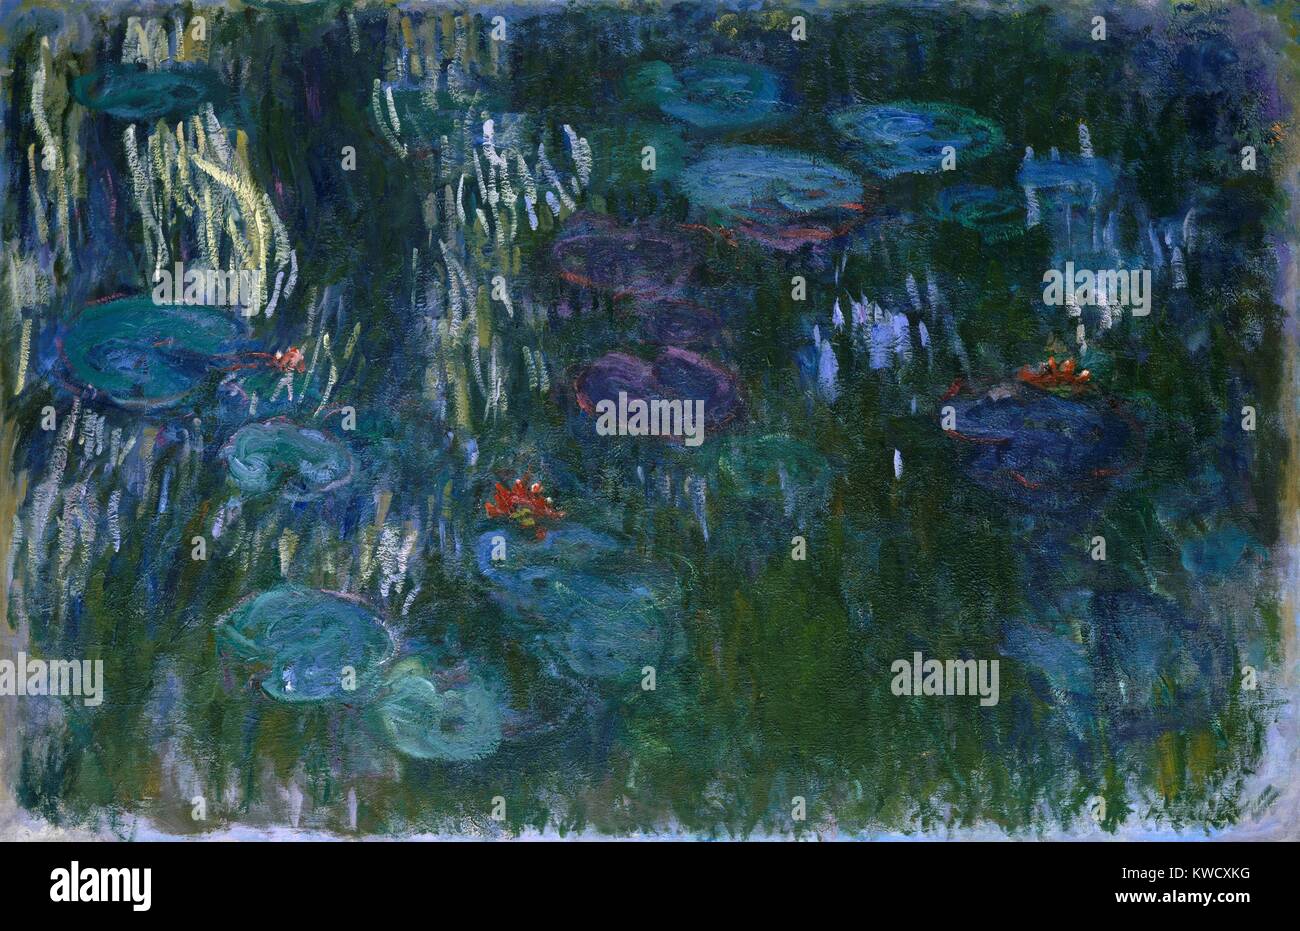 Seerosen von Claude Monet, 1916-19, französischer impressionistischer Malerei, Öl auf Leinwand. In seinem letzten Jahrzehnt, Monet malte Seerosen in einer Flüssigkeit, Free Style (BSLOC 2017 3 50) Stockfoto